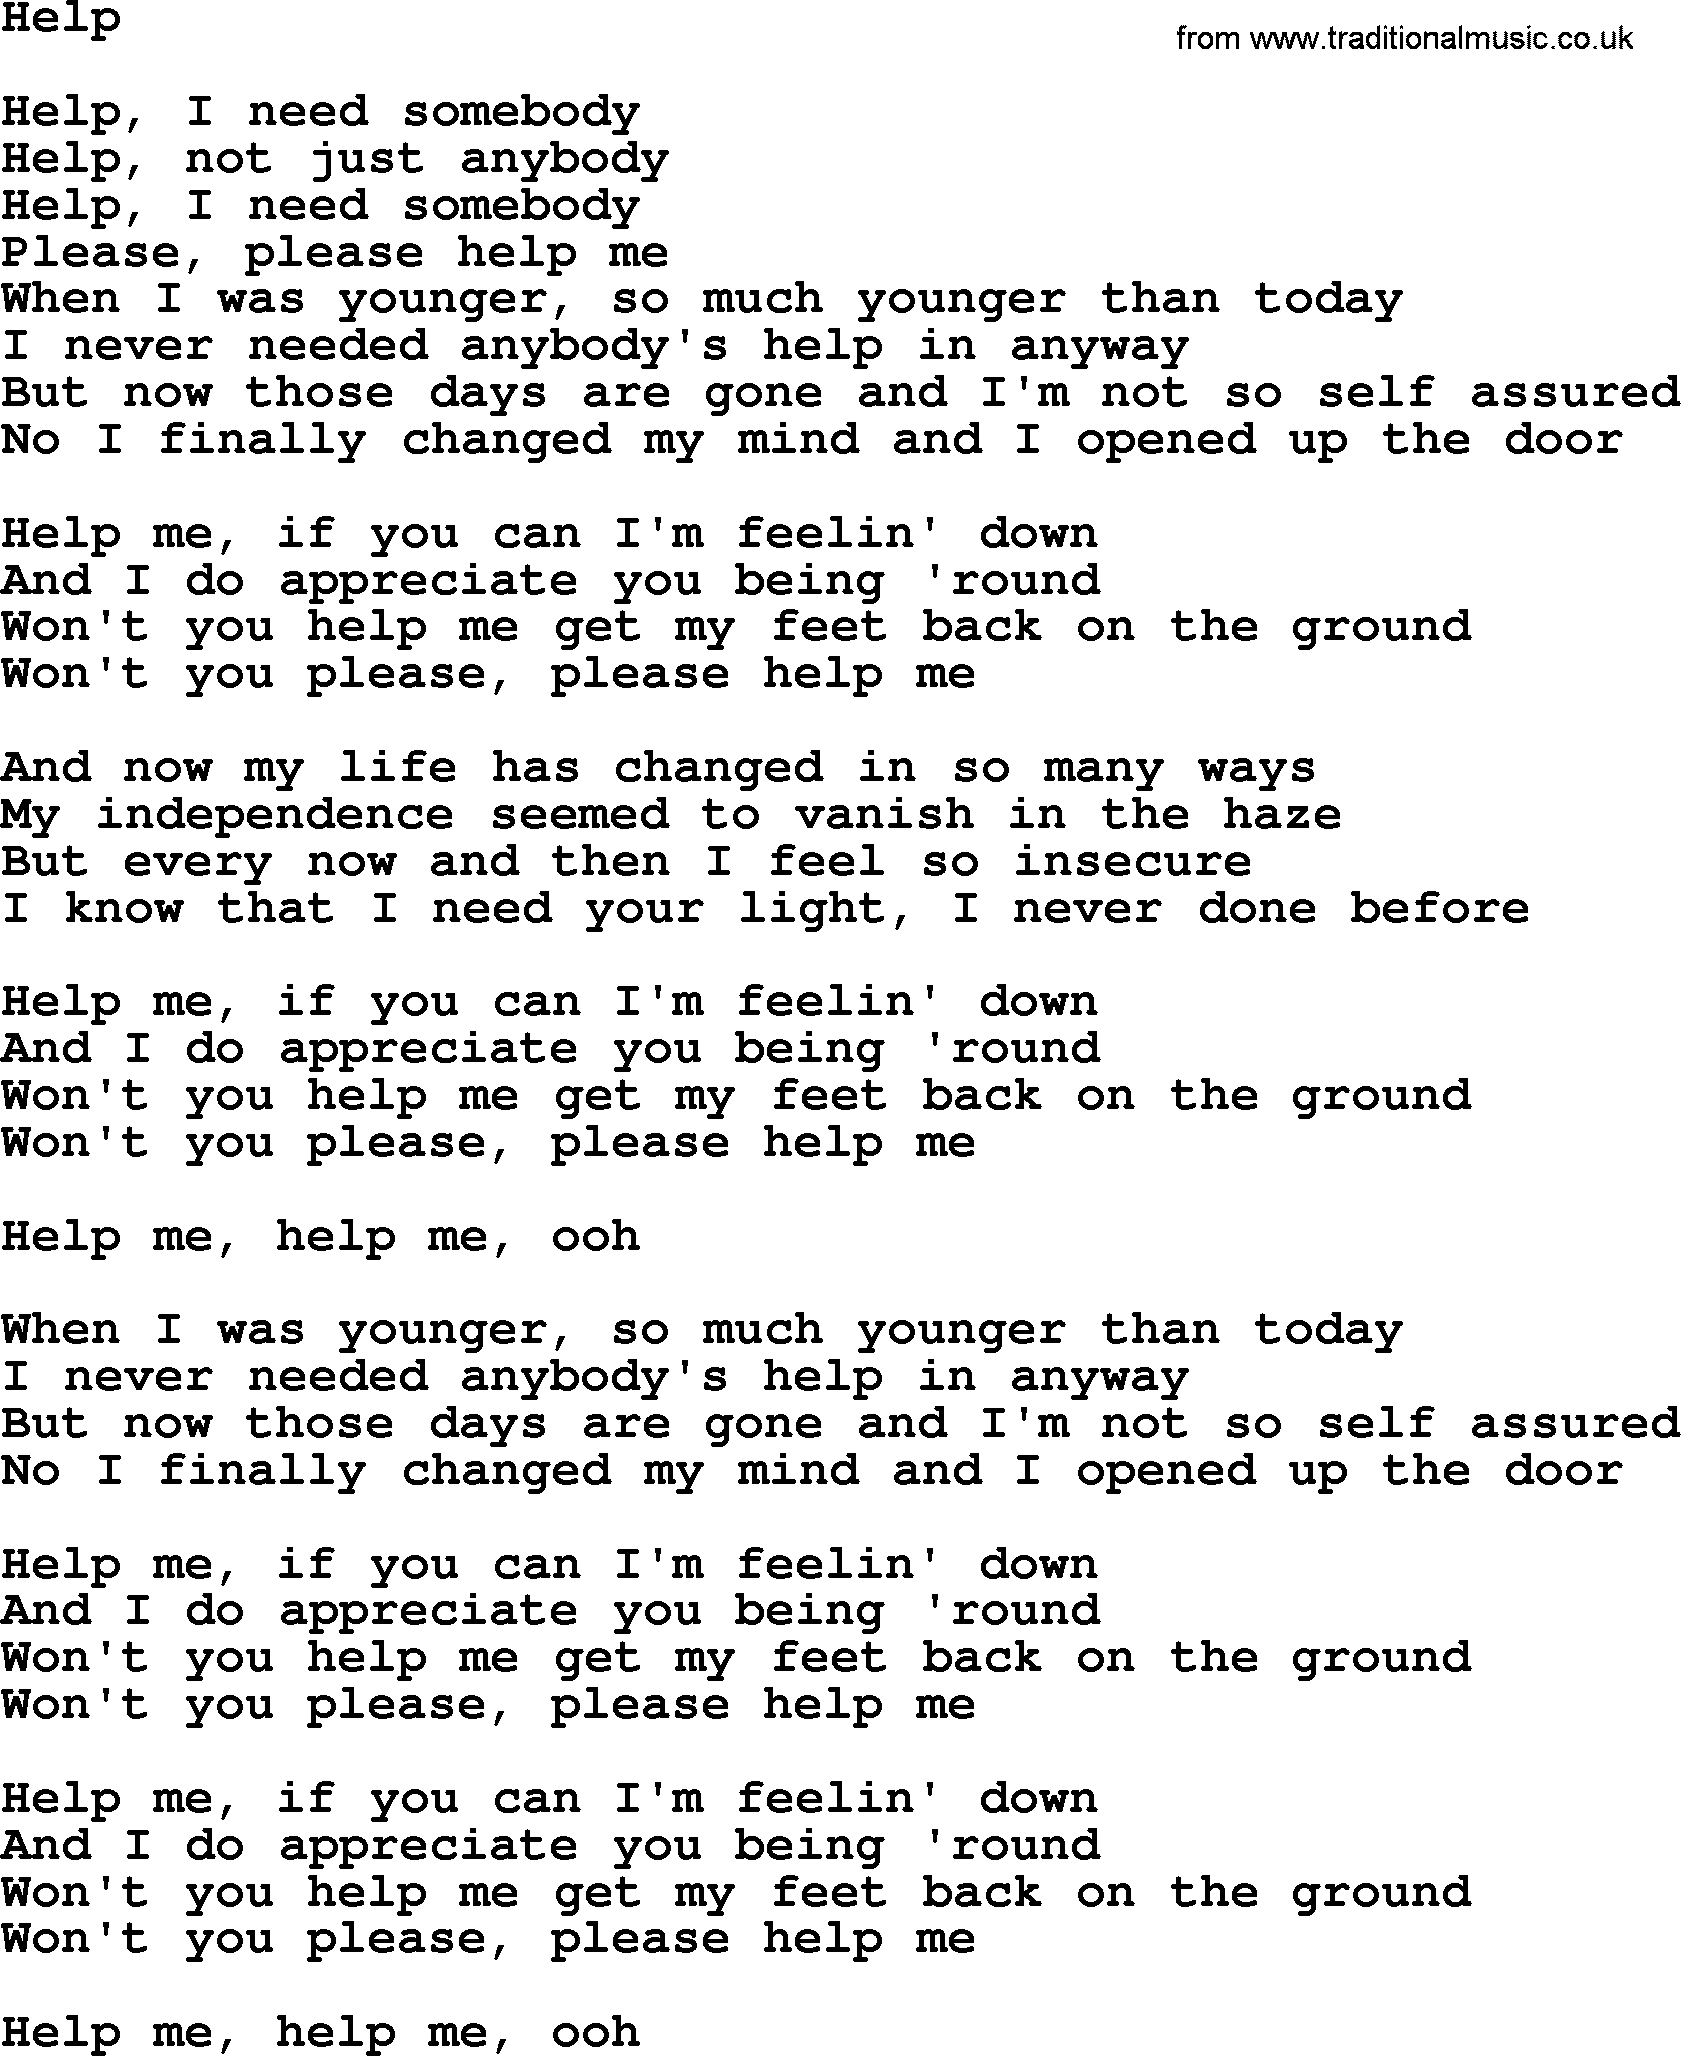 Dolly Parton song Help.txt lyrics